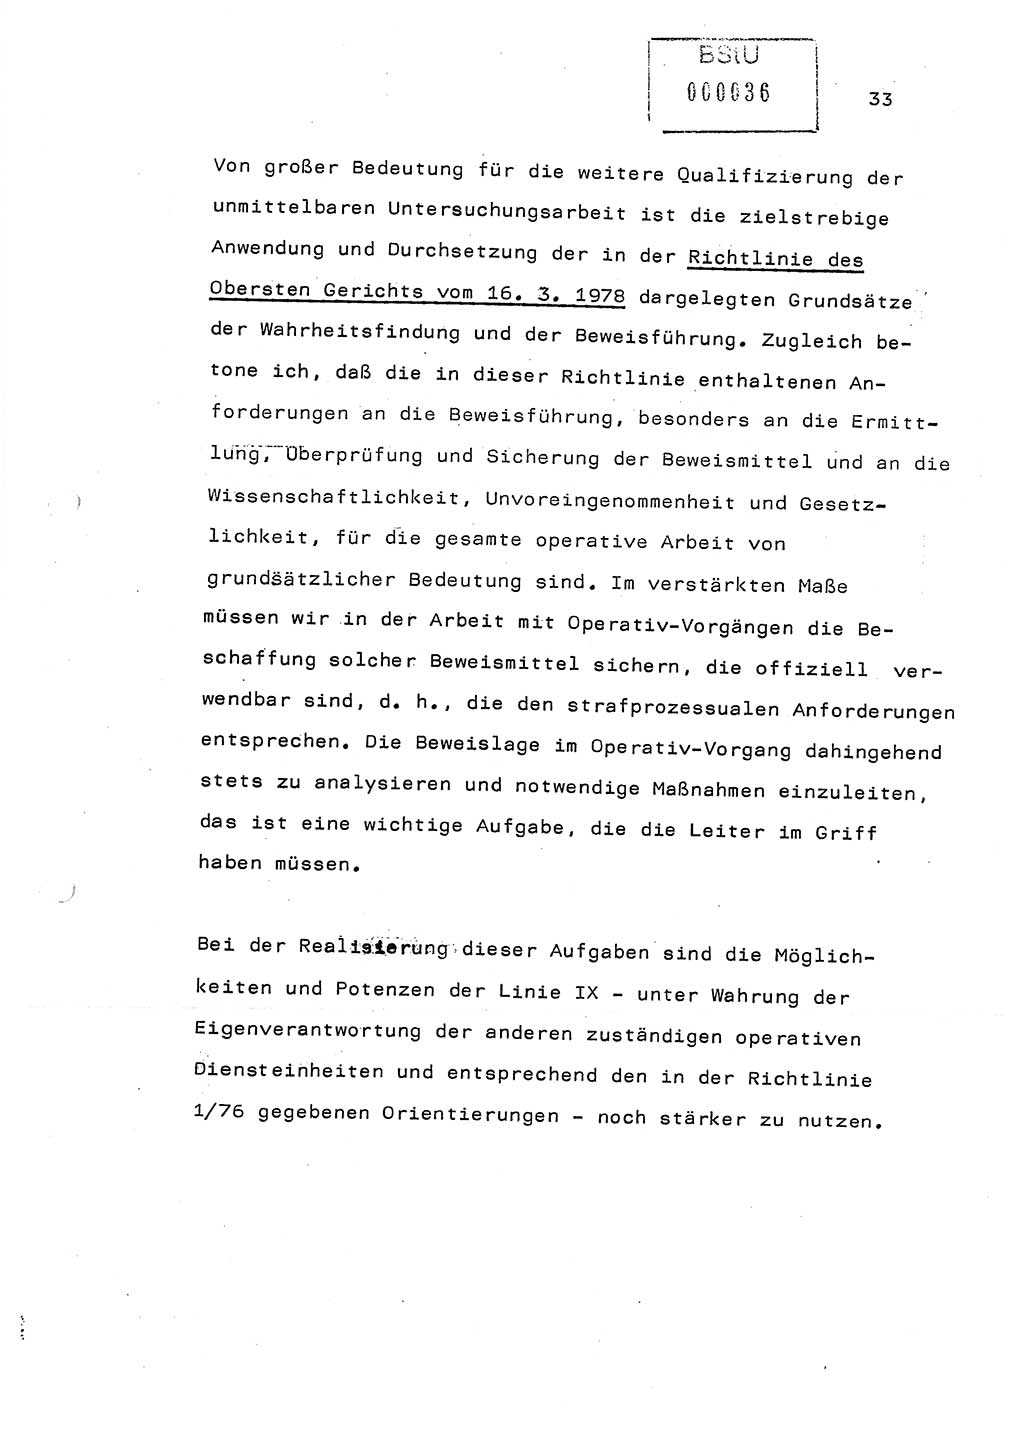 Referat (Generaloberst Erich Mielke) auf der Zentralen Dienstkonferenz am 24.5.1979 [Ministerium für Staatssicherheit (MfS), Deutsche Demokratische Republik (DDR), Der Minister], Berlin 1979, Seite 33 (Ref. DK DDR MfS Min. /79 1979, S. 33)